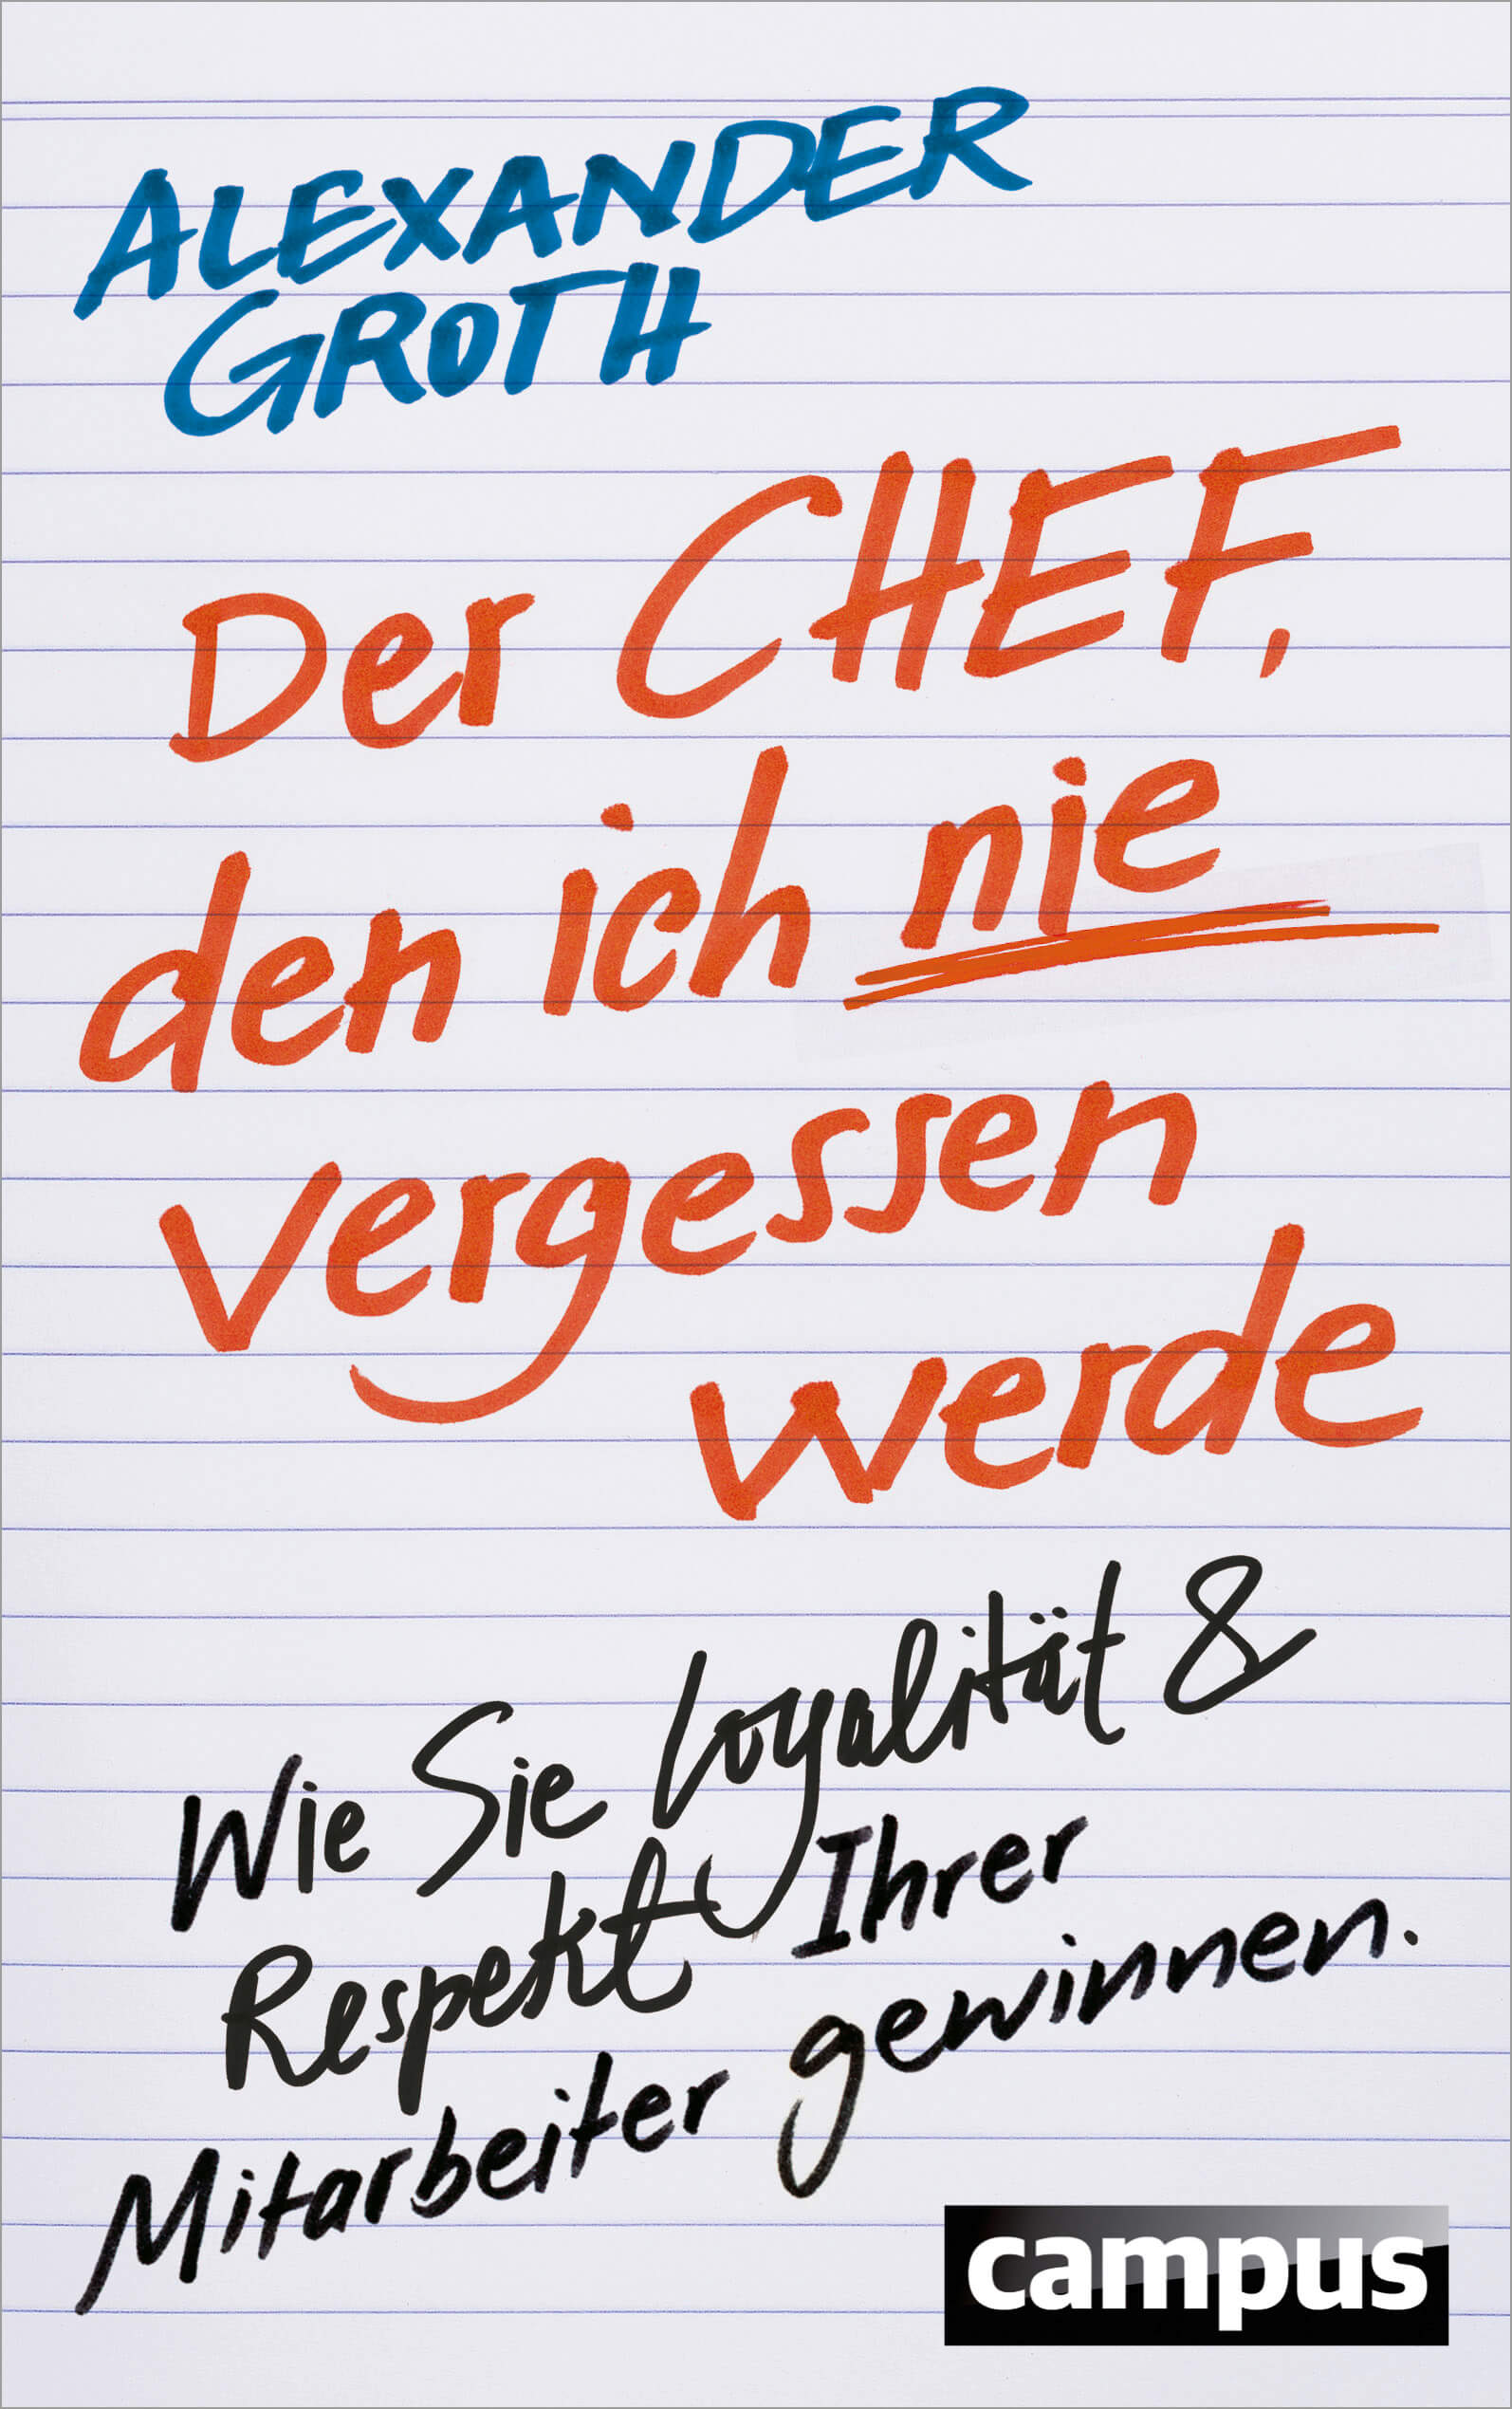 Groth Der Chef U1.indd